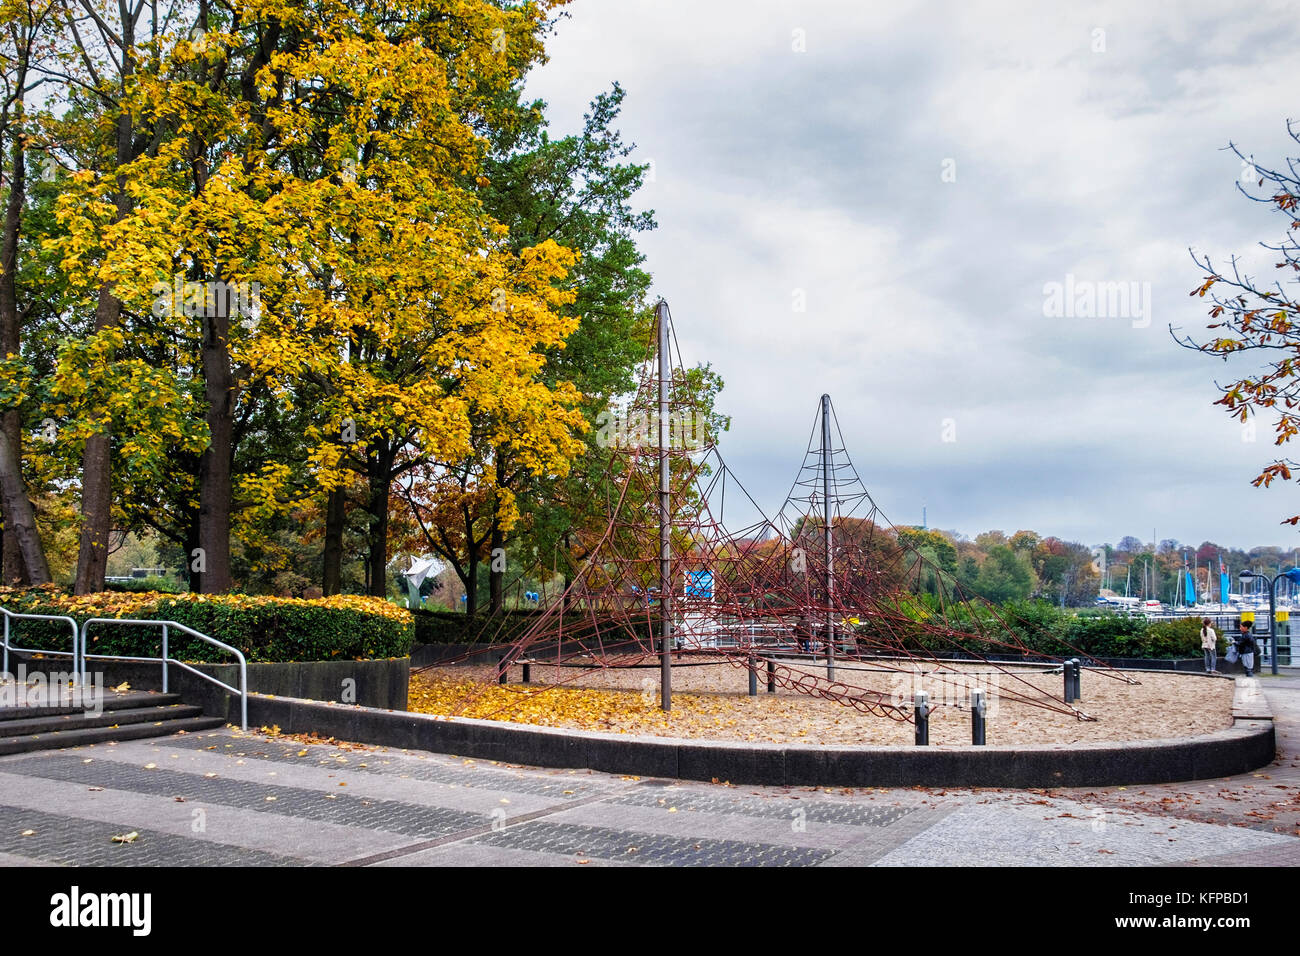 Berlin, Wannsee Hafen. Kinder Klettergerüst und Spielplatz ist im Herbst  verlassen Stockfotografie - Alamy